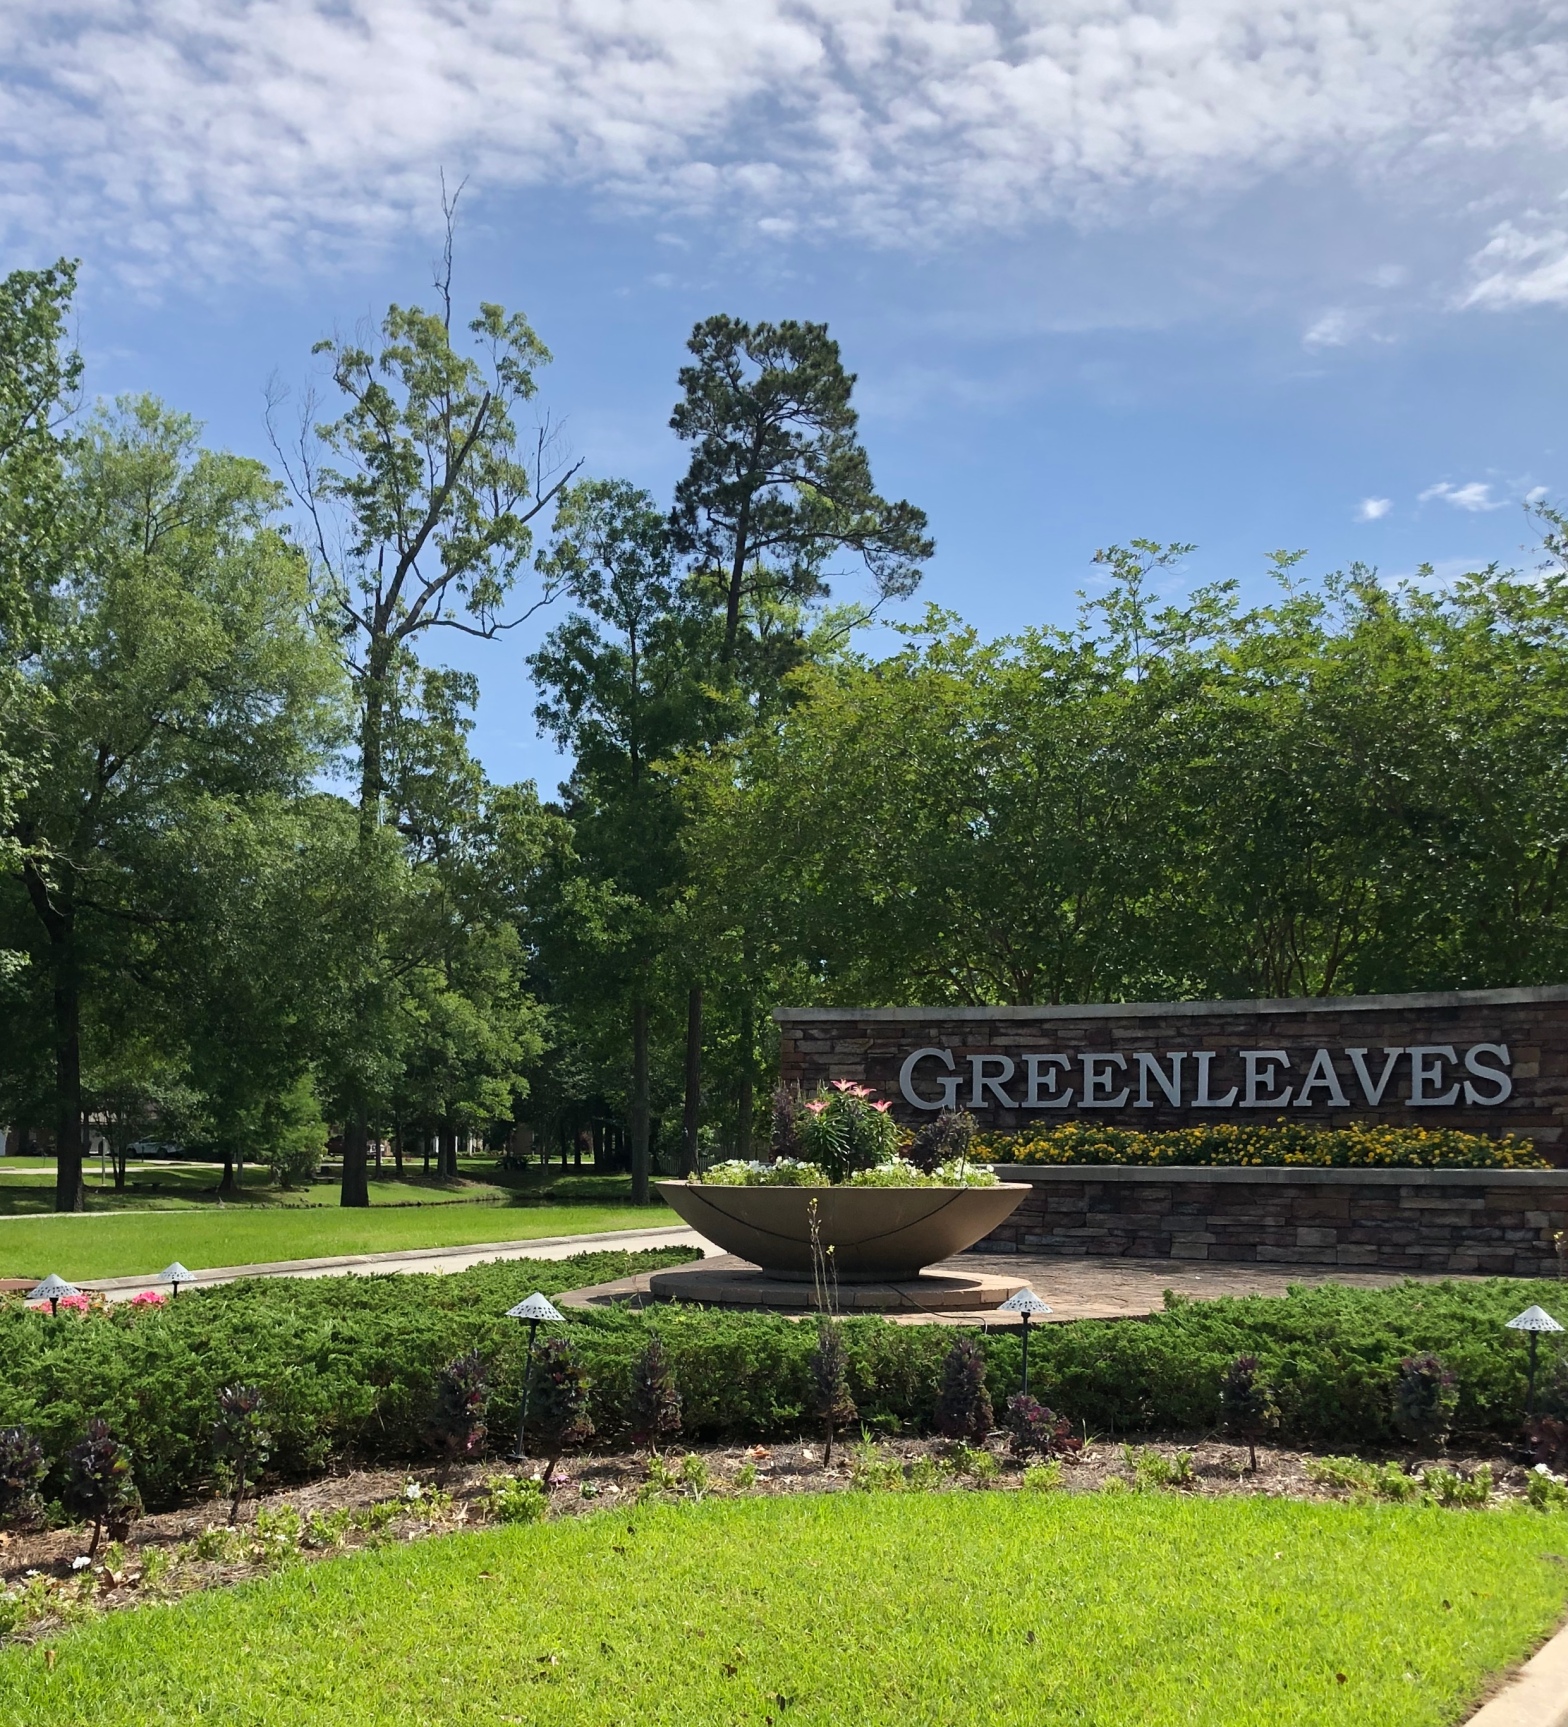 Greenleaves front entrance